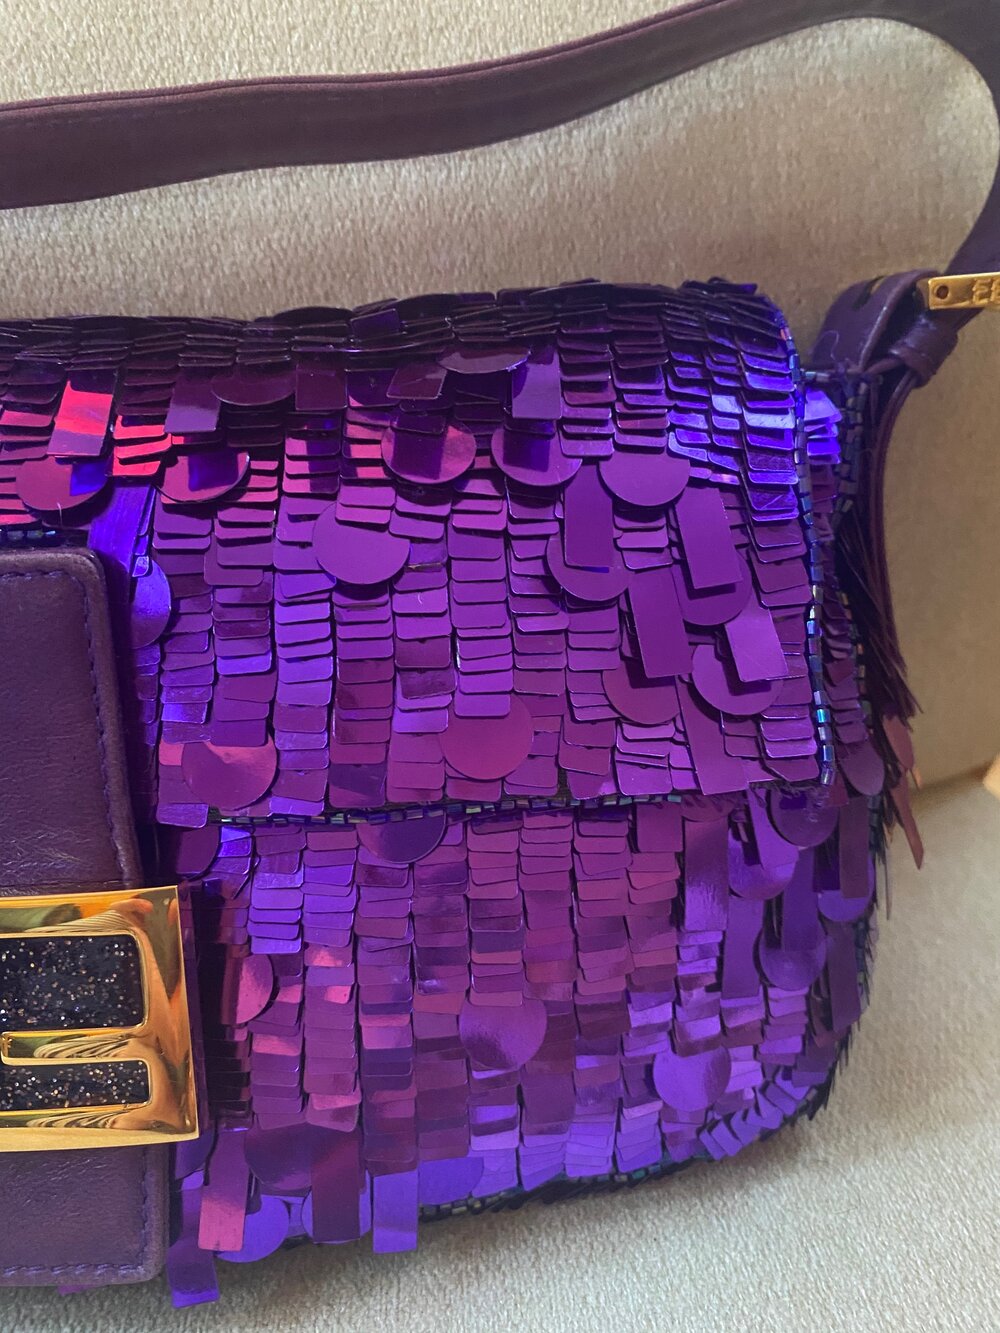 Fendi relaunches SATC's purple sequin Baguette